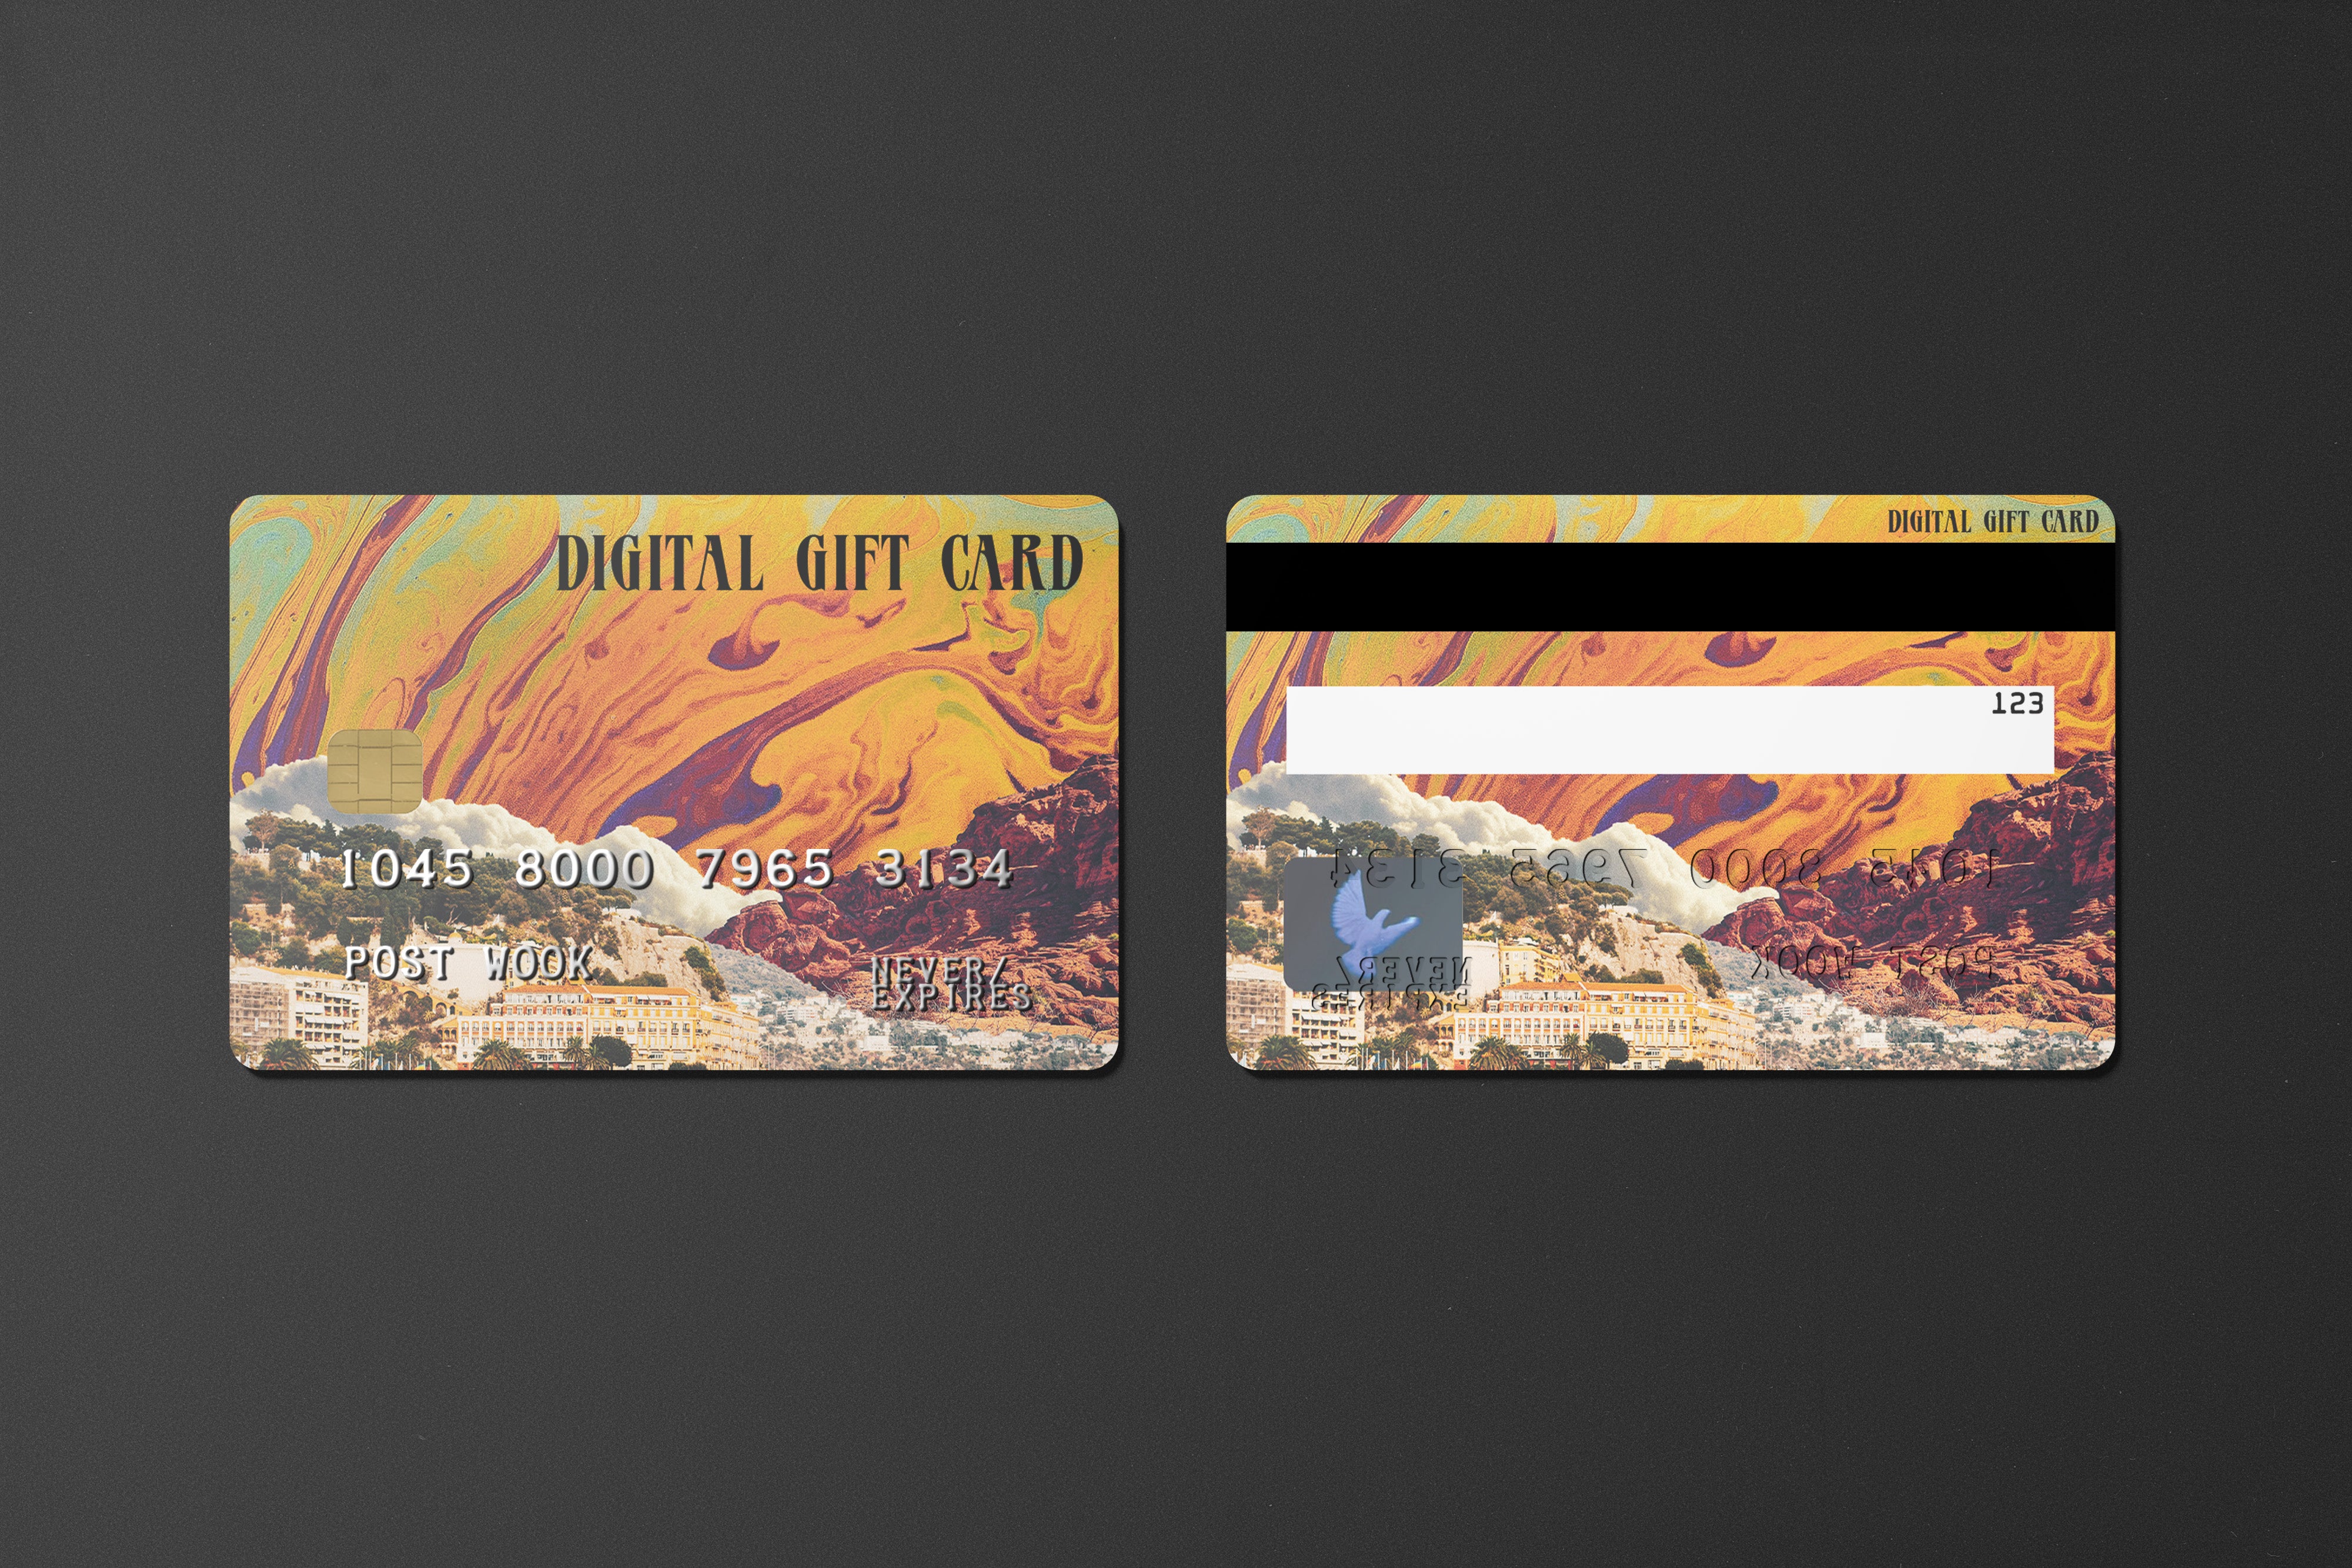 POST WOOK Digital Gift Card